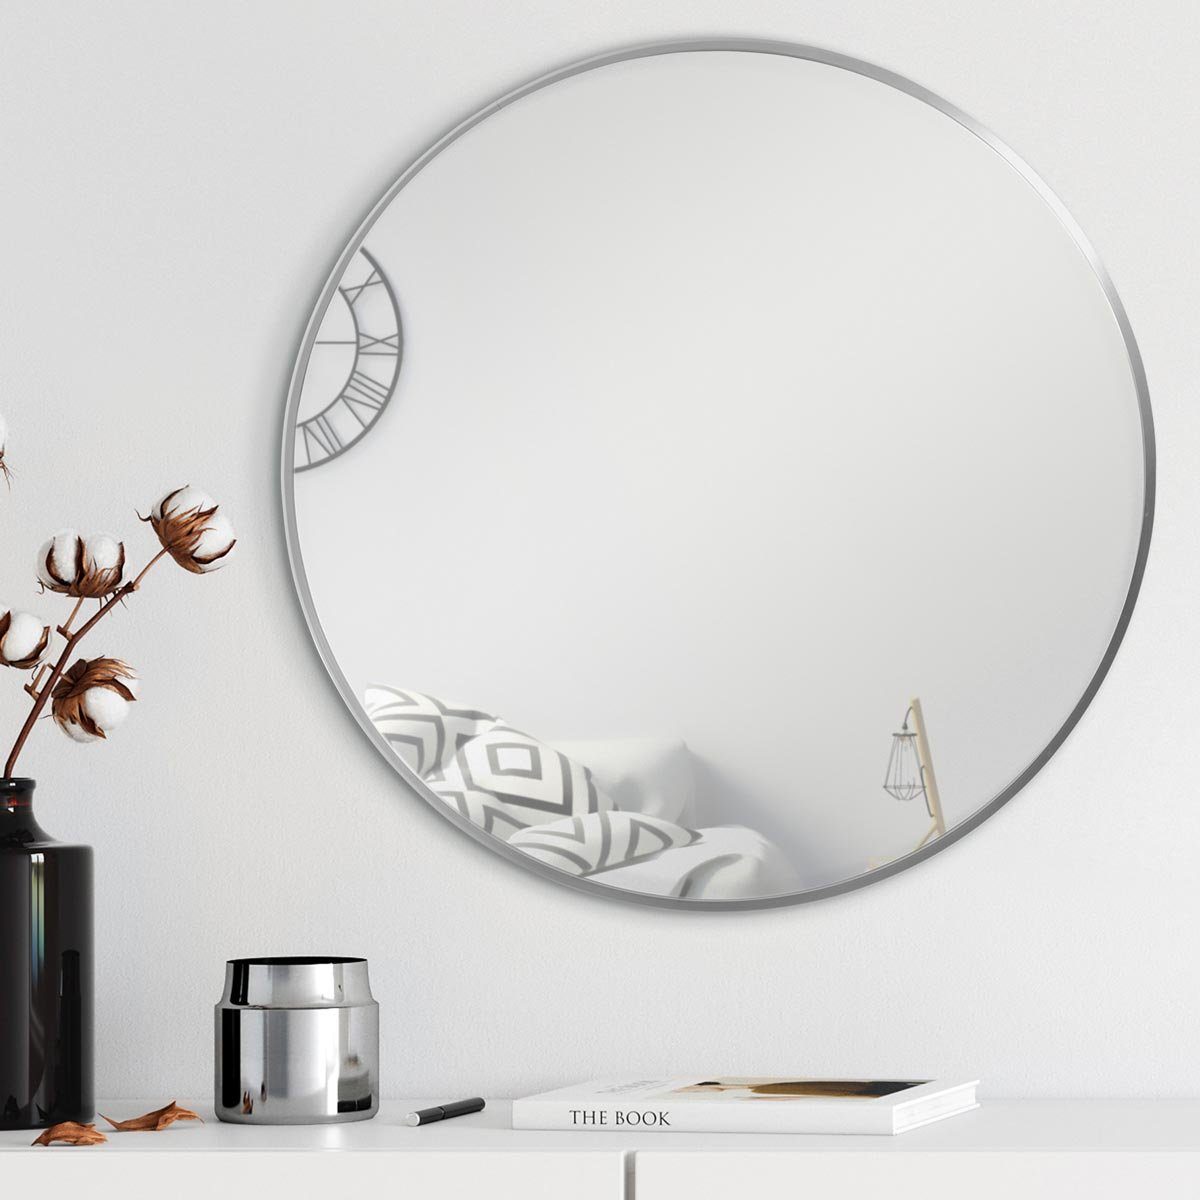 mit Wandspiegel, PHOTOLINI schmaler Silber, Rahmen rund eleganter Metallrahmen Spiegel